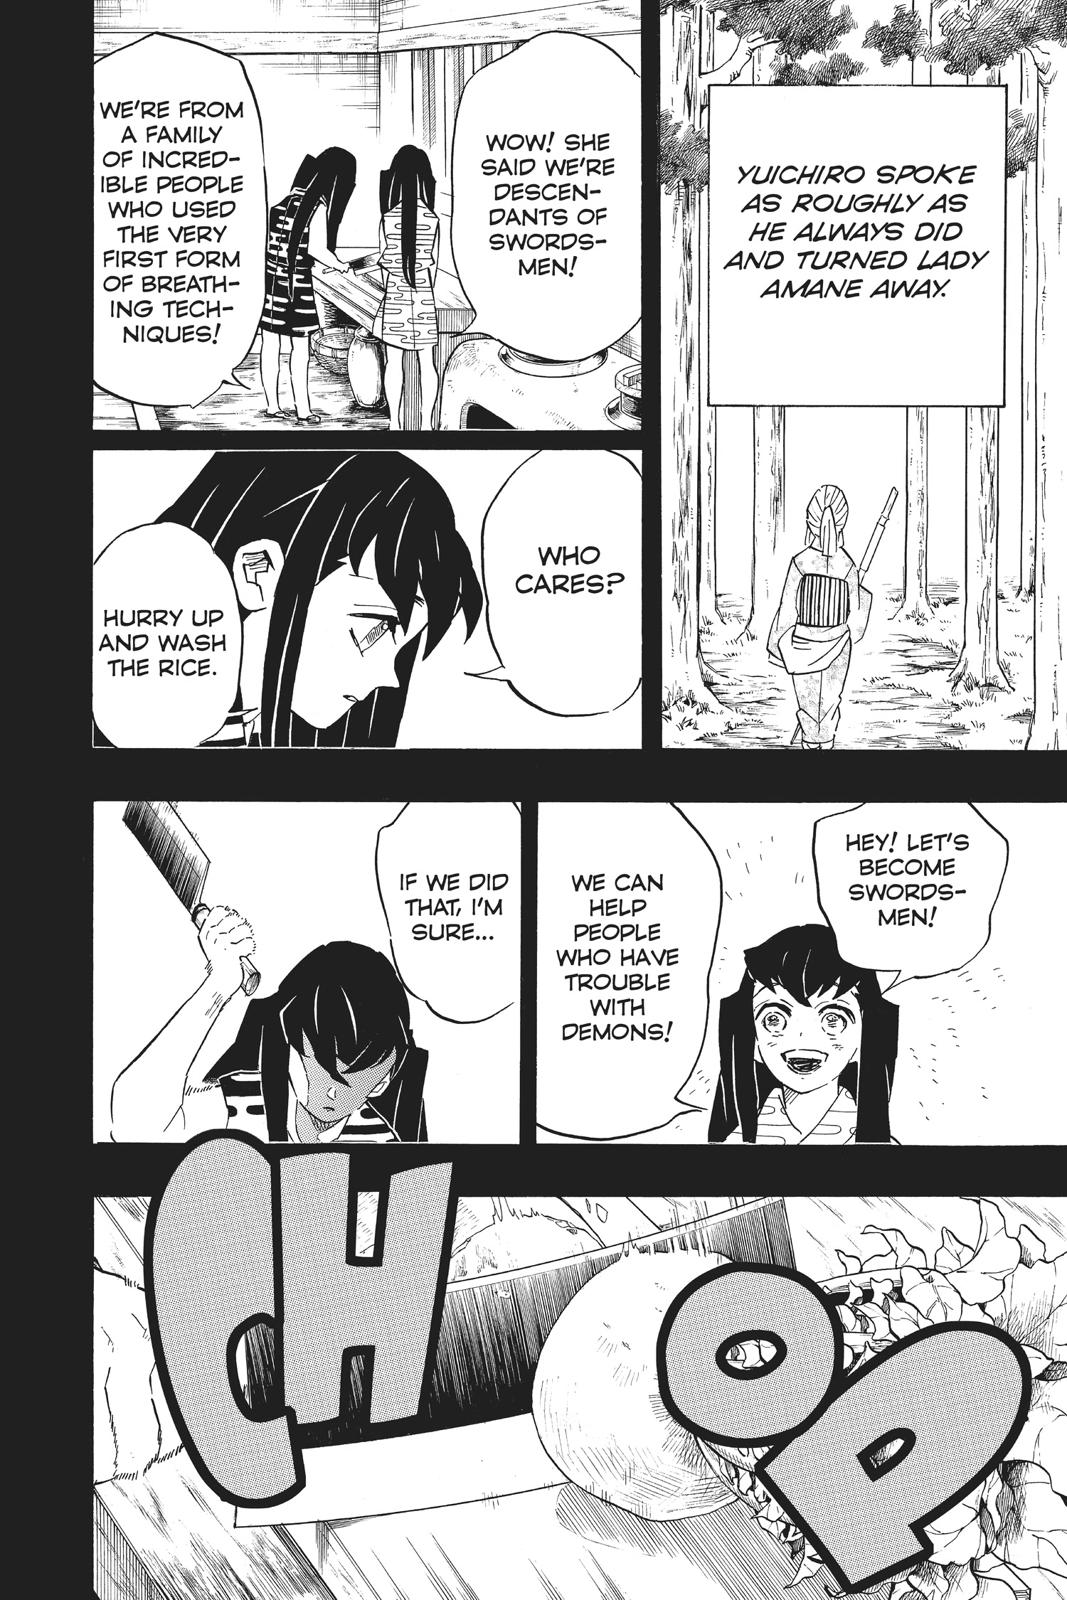 Demon Slayer Manga Manga Chapter - 118 - image 8